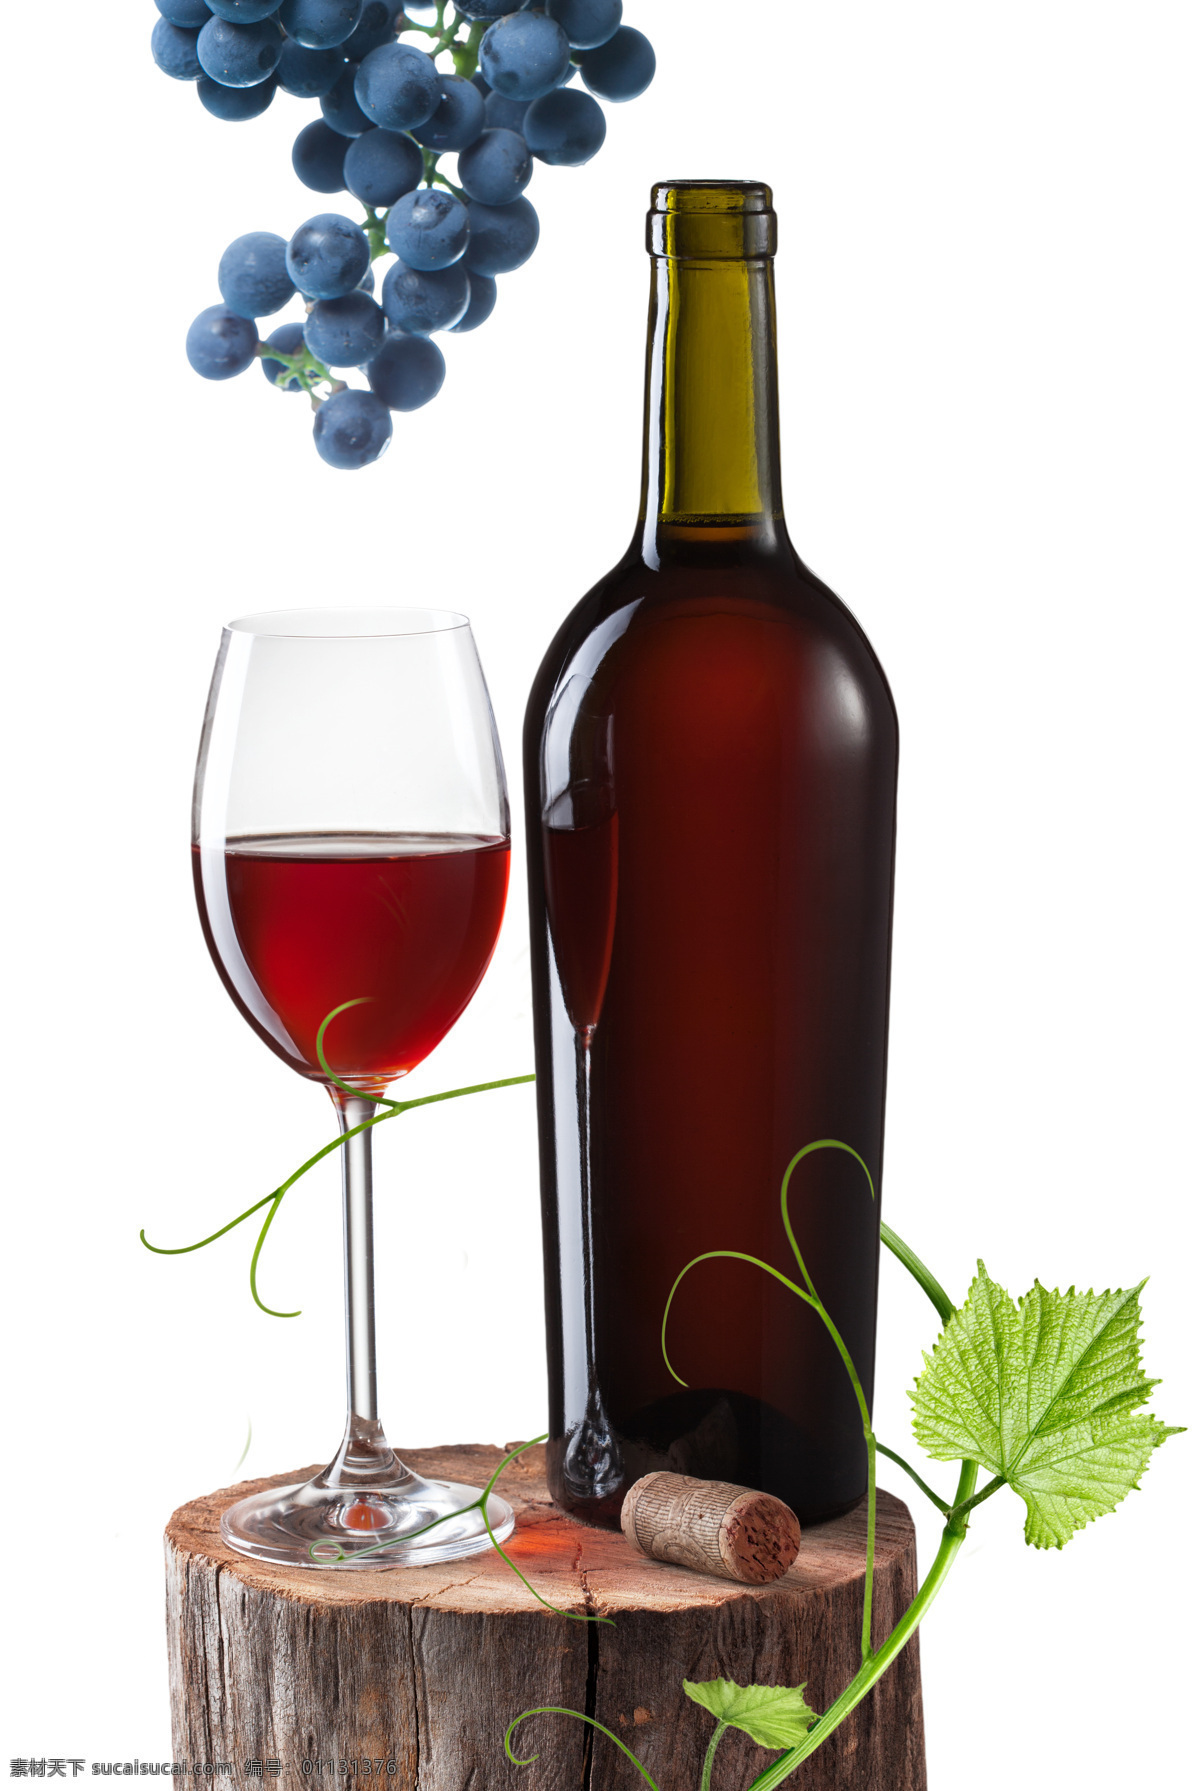 木桩 上 葡萄酒 绿叶 葡萄 玻璃瓶 酒类图片 餐饮美食